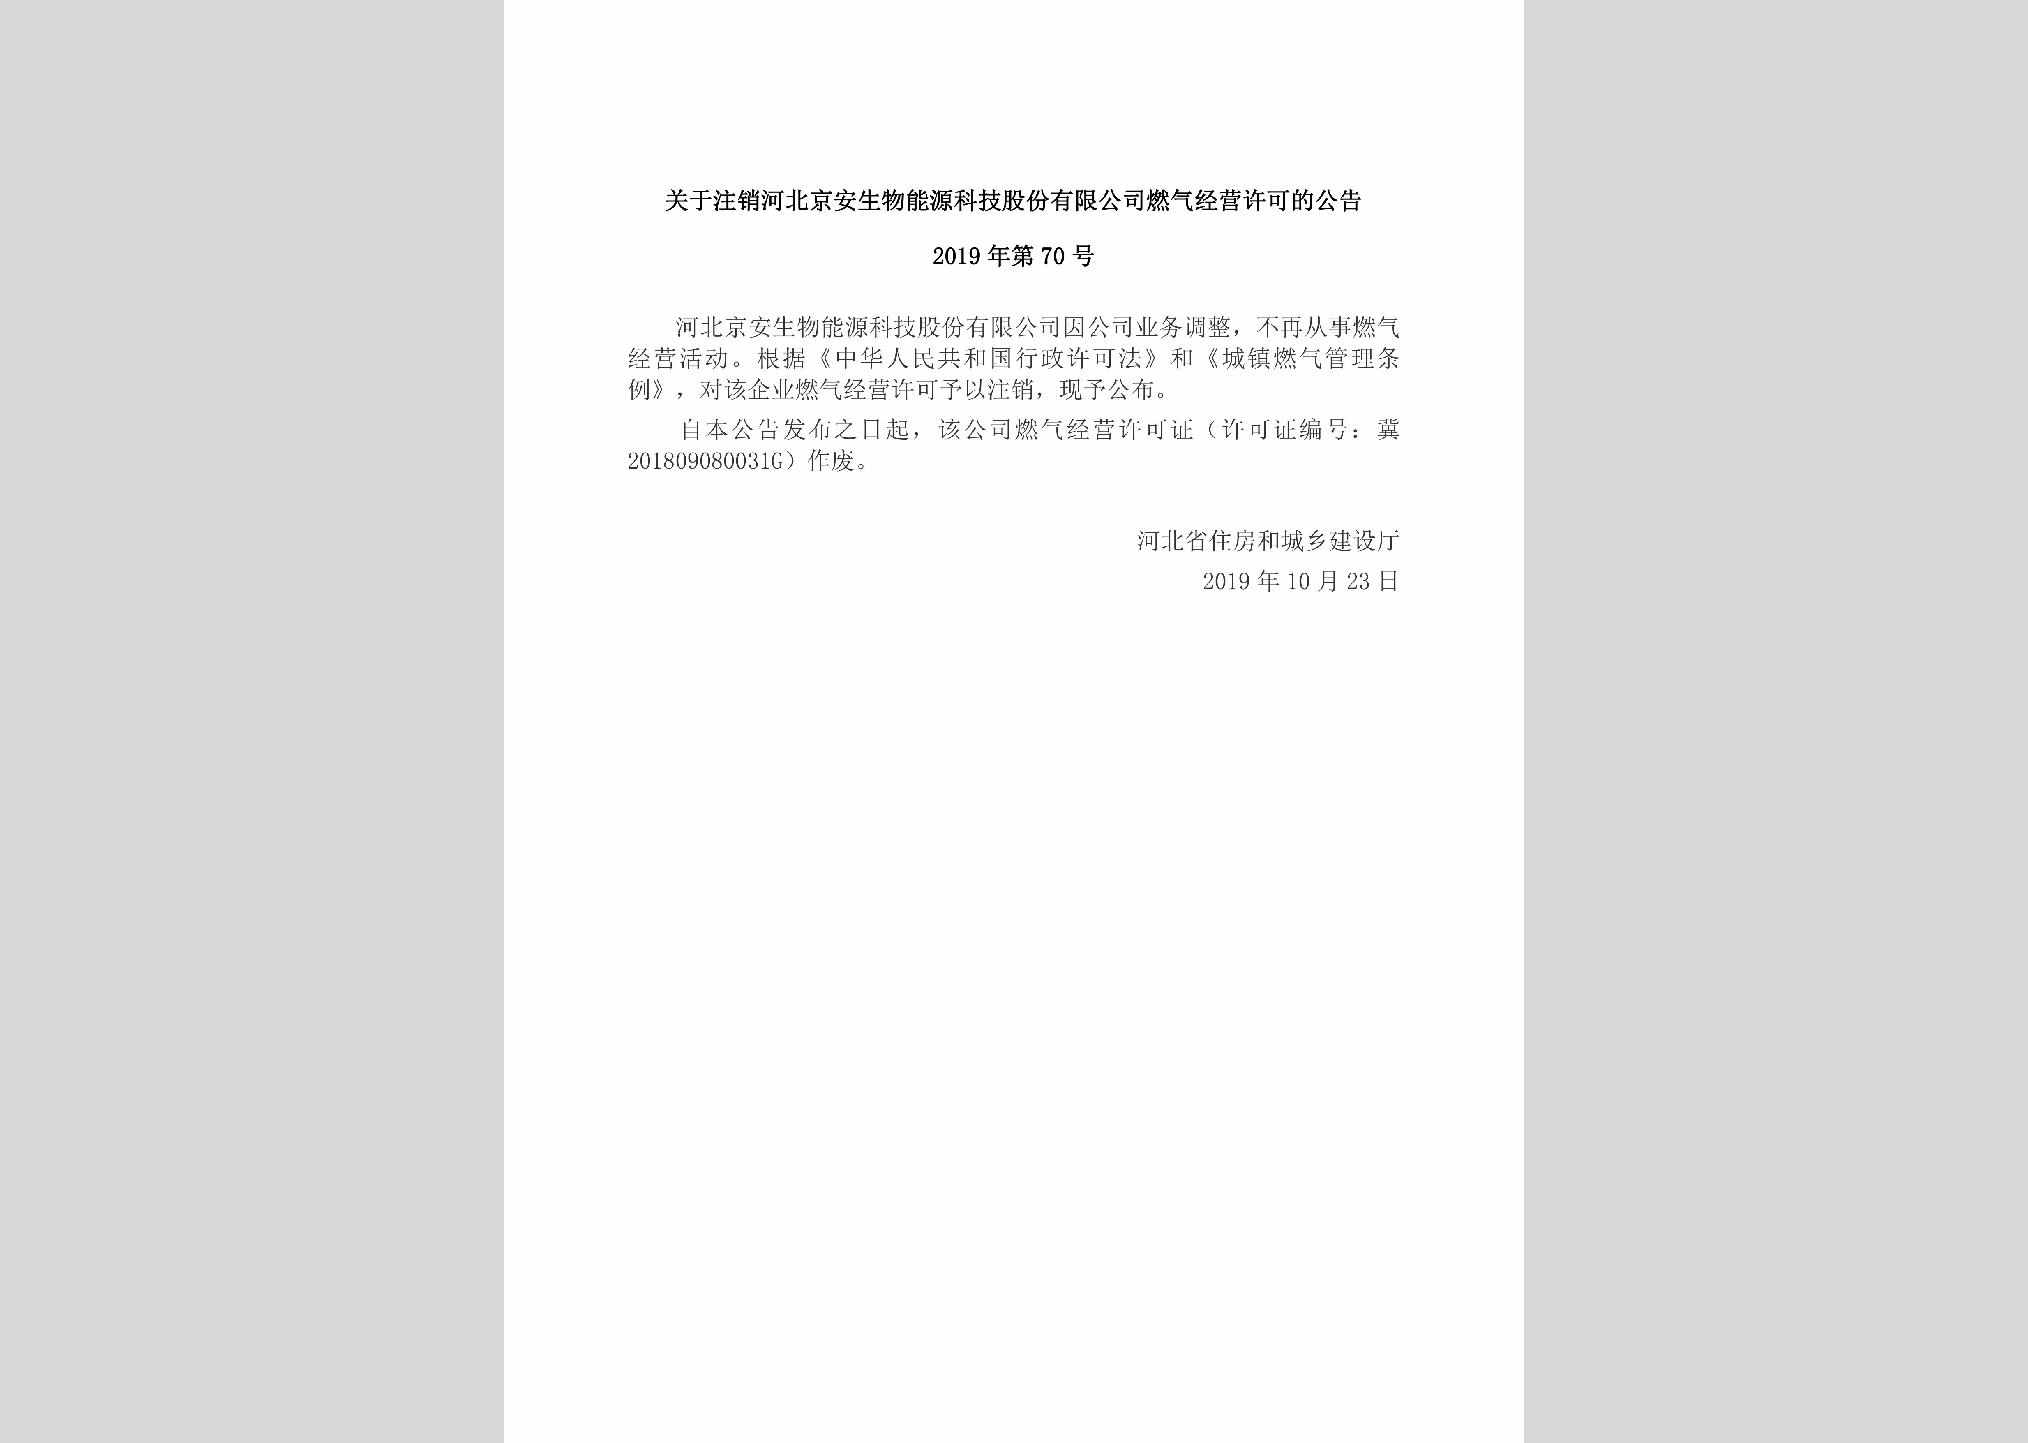 2019年第70号：关于注销河北京安生物能源科技股份有限公司燃气经营许可的公告